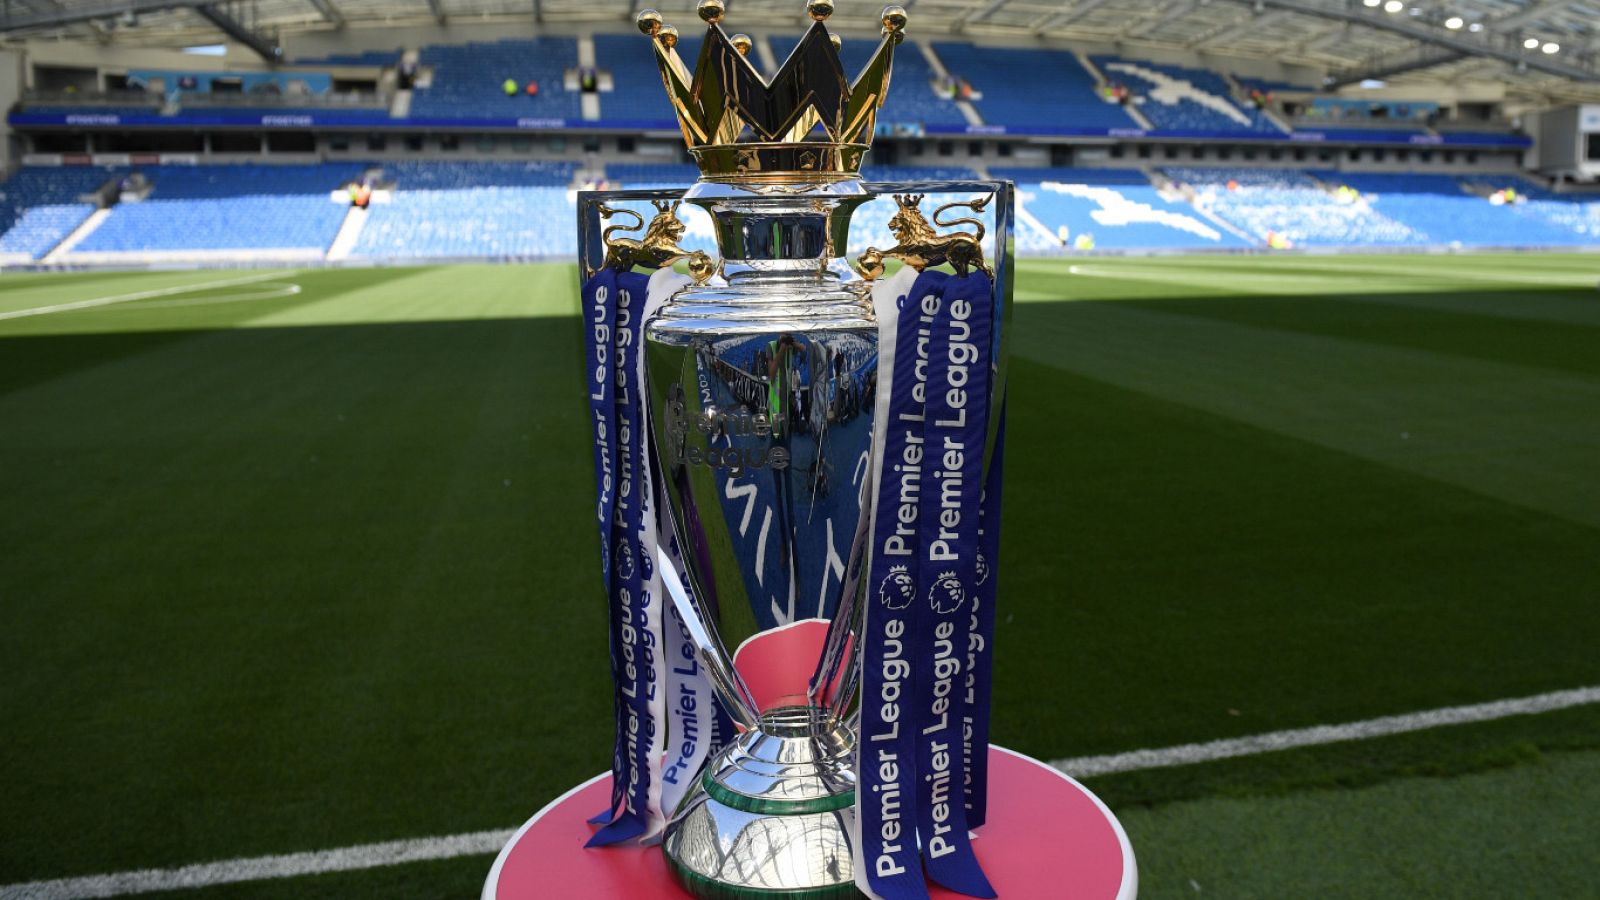 El trofeo de la Premier League sobre una peana en un campo